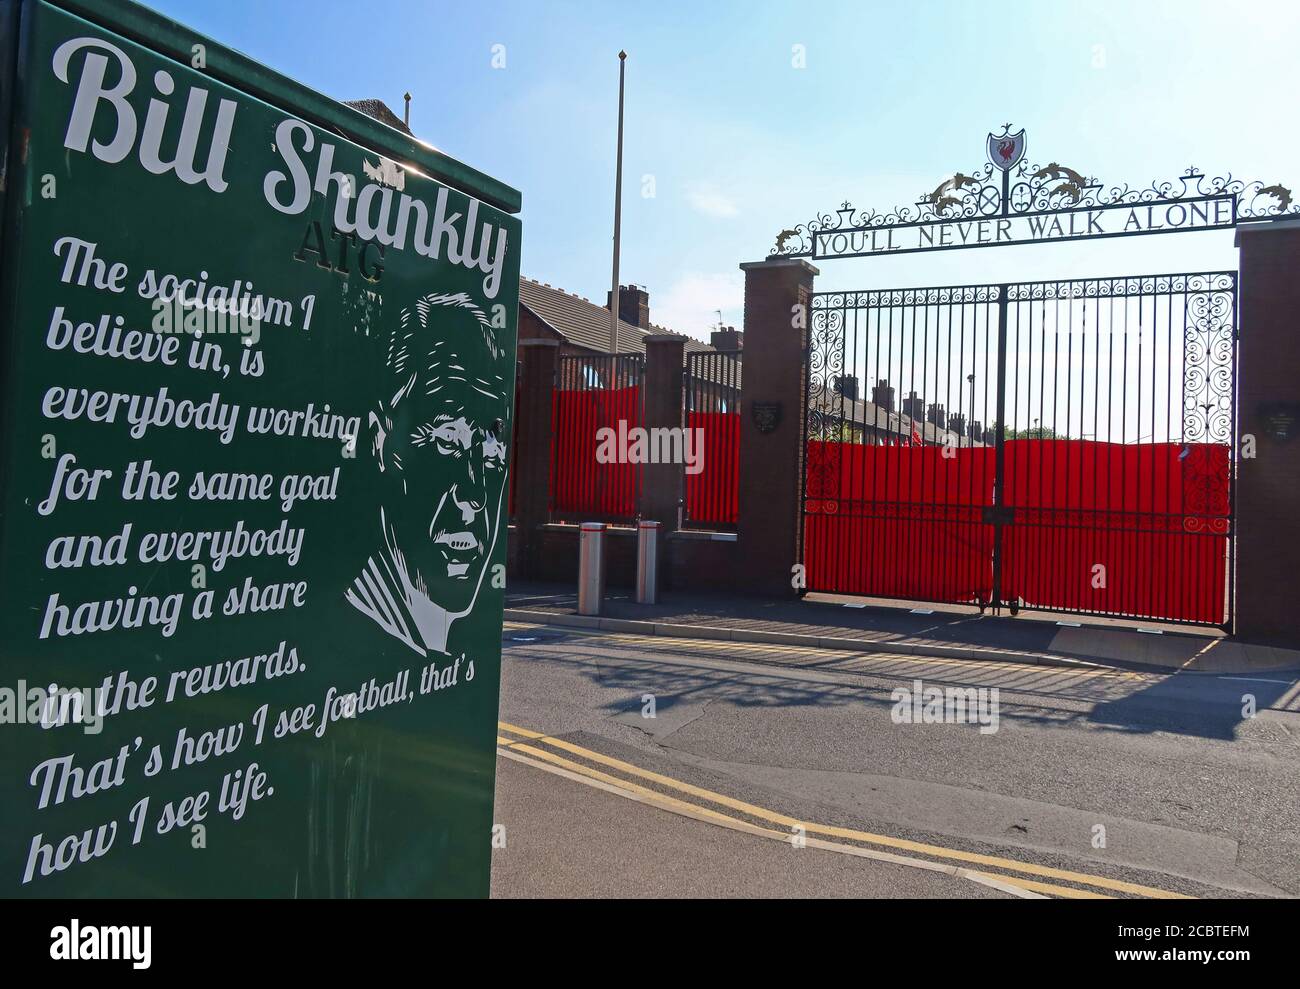 Bill Shankly, du wirst nie alleine gehen Tore, LFC, Liverpool Football Club, Anfield, Premier League, Merseyside, Nordwestengland, Großbritannien, L4 2UZ Stockfoto